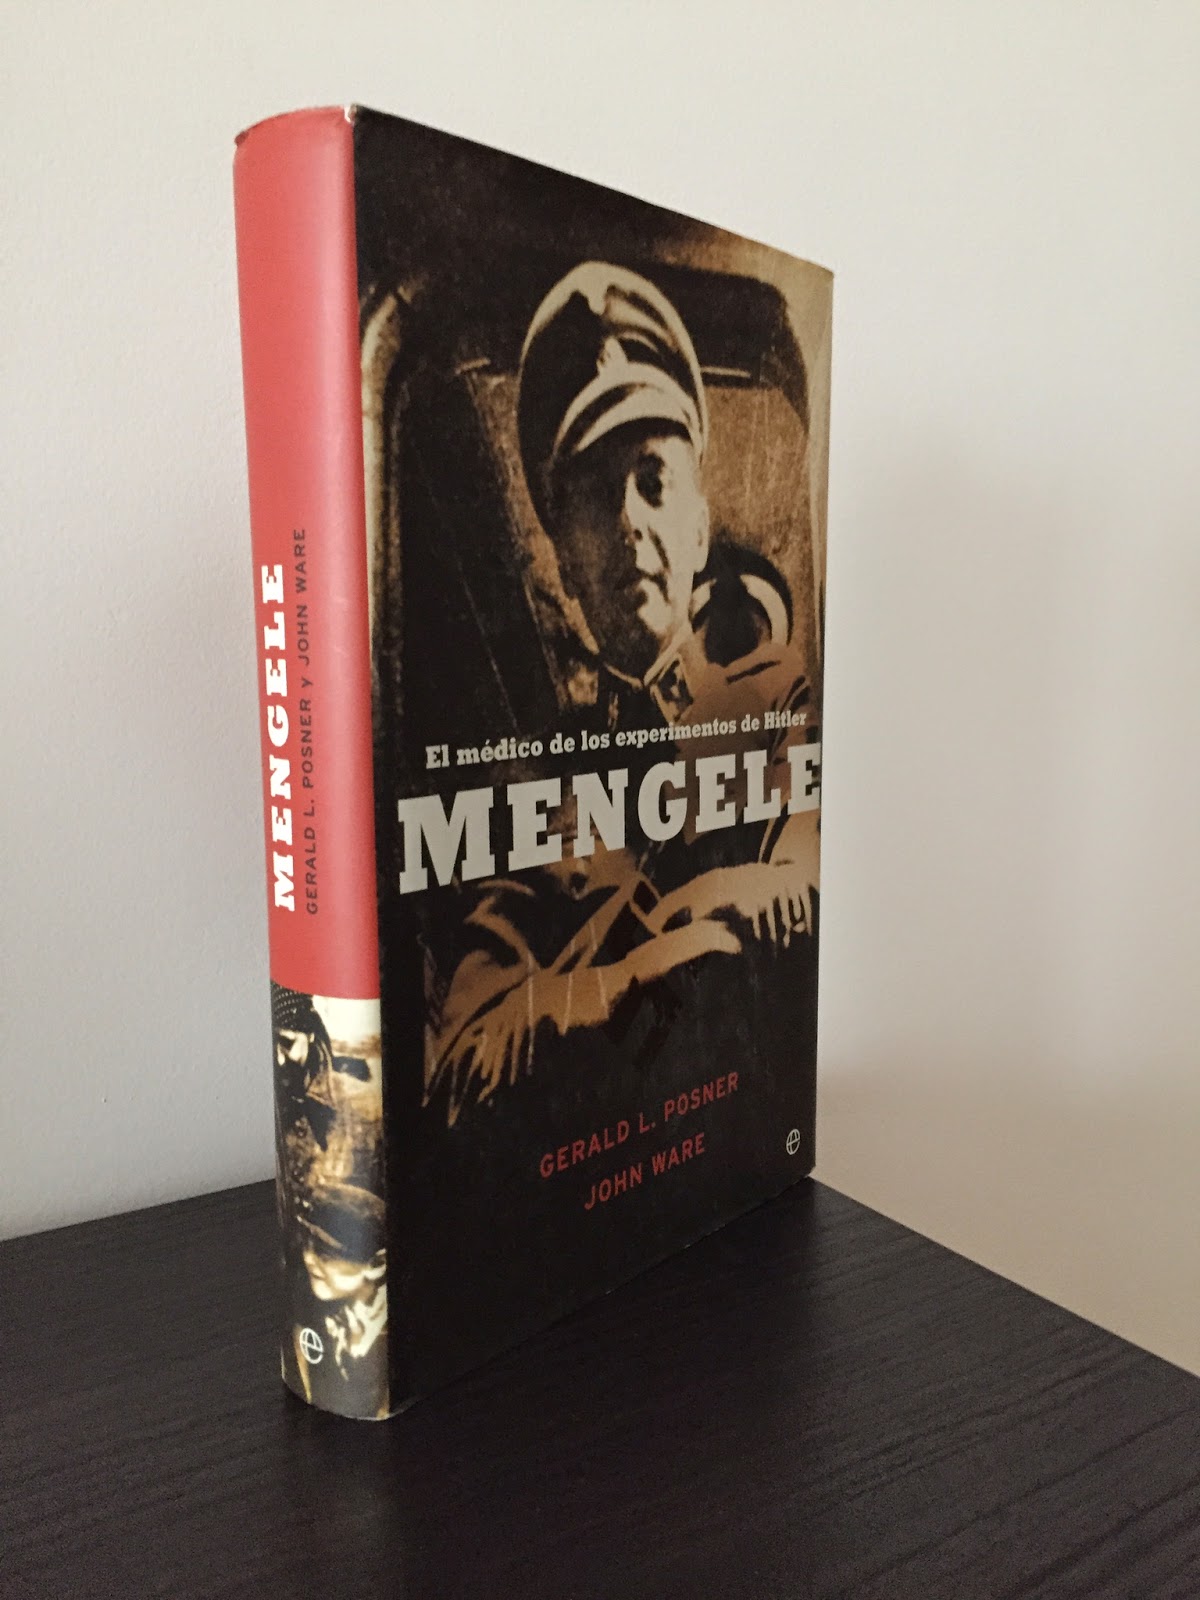 Mengele, Libros bélicos, Segunda guerra mundial